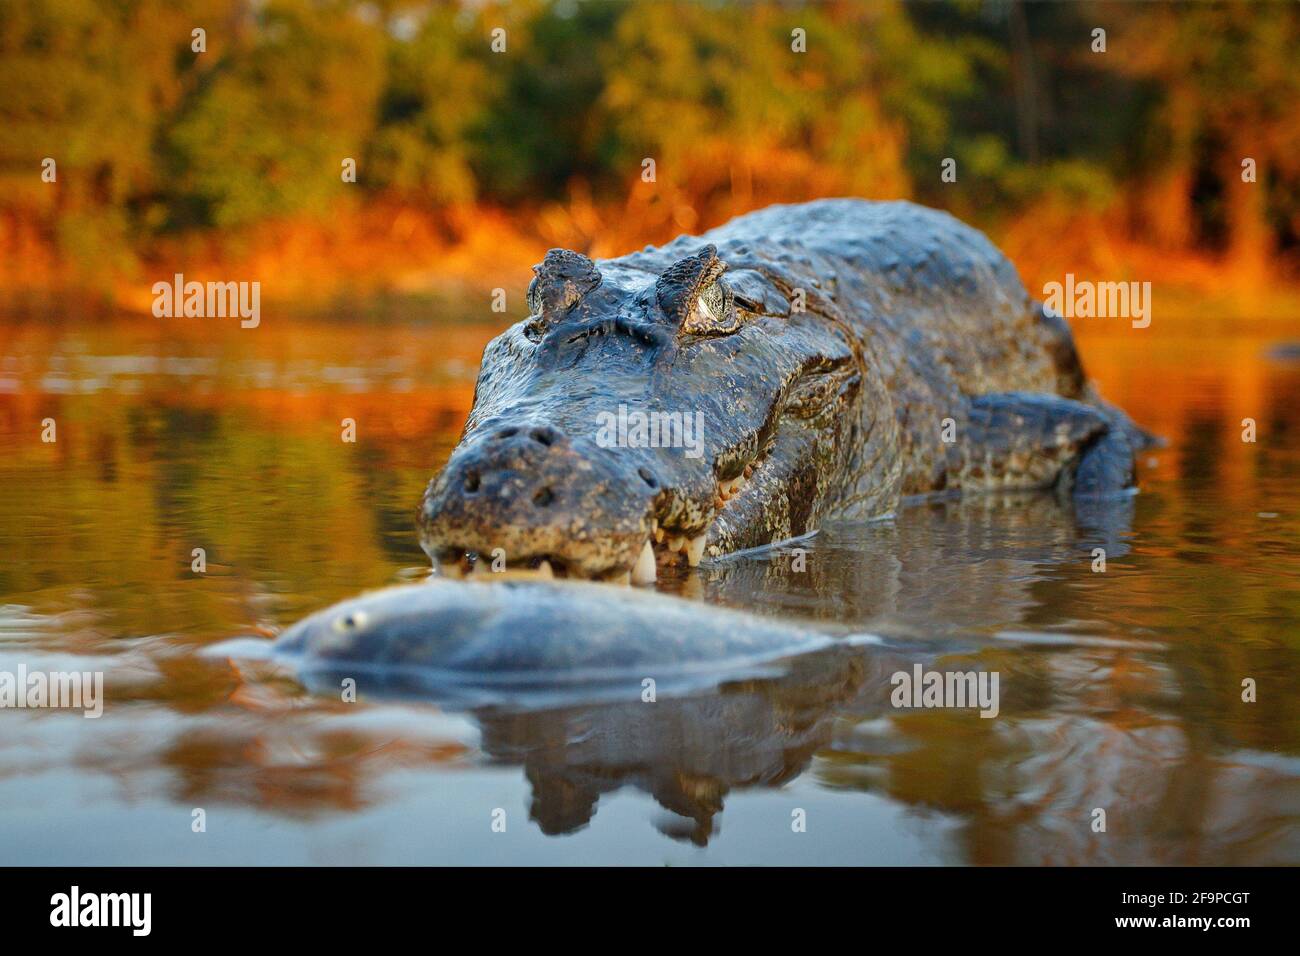 Coccodrillo cattura il pesce in acqua di fiume, luce della sera. Yacare Caiman, coccodrillo con piranha in museruola aperta con denti grandi, Pantanal, Bolivia. Dettaglio wid Foto Stock